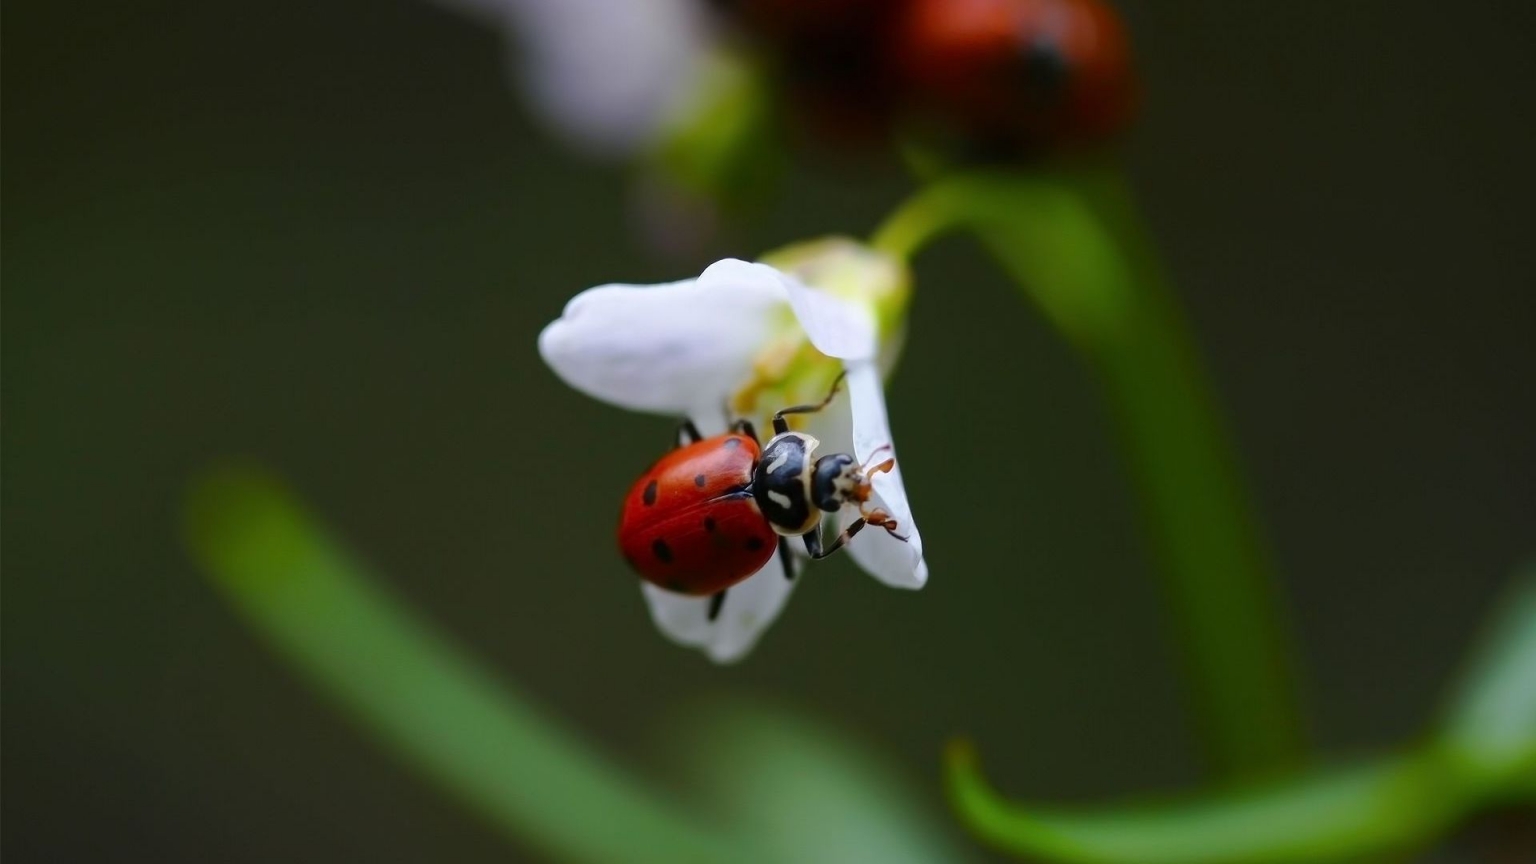 Ladybug on White Flower for 1536 x 864 HDTV resolution